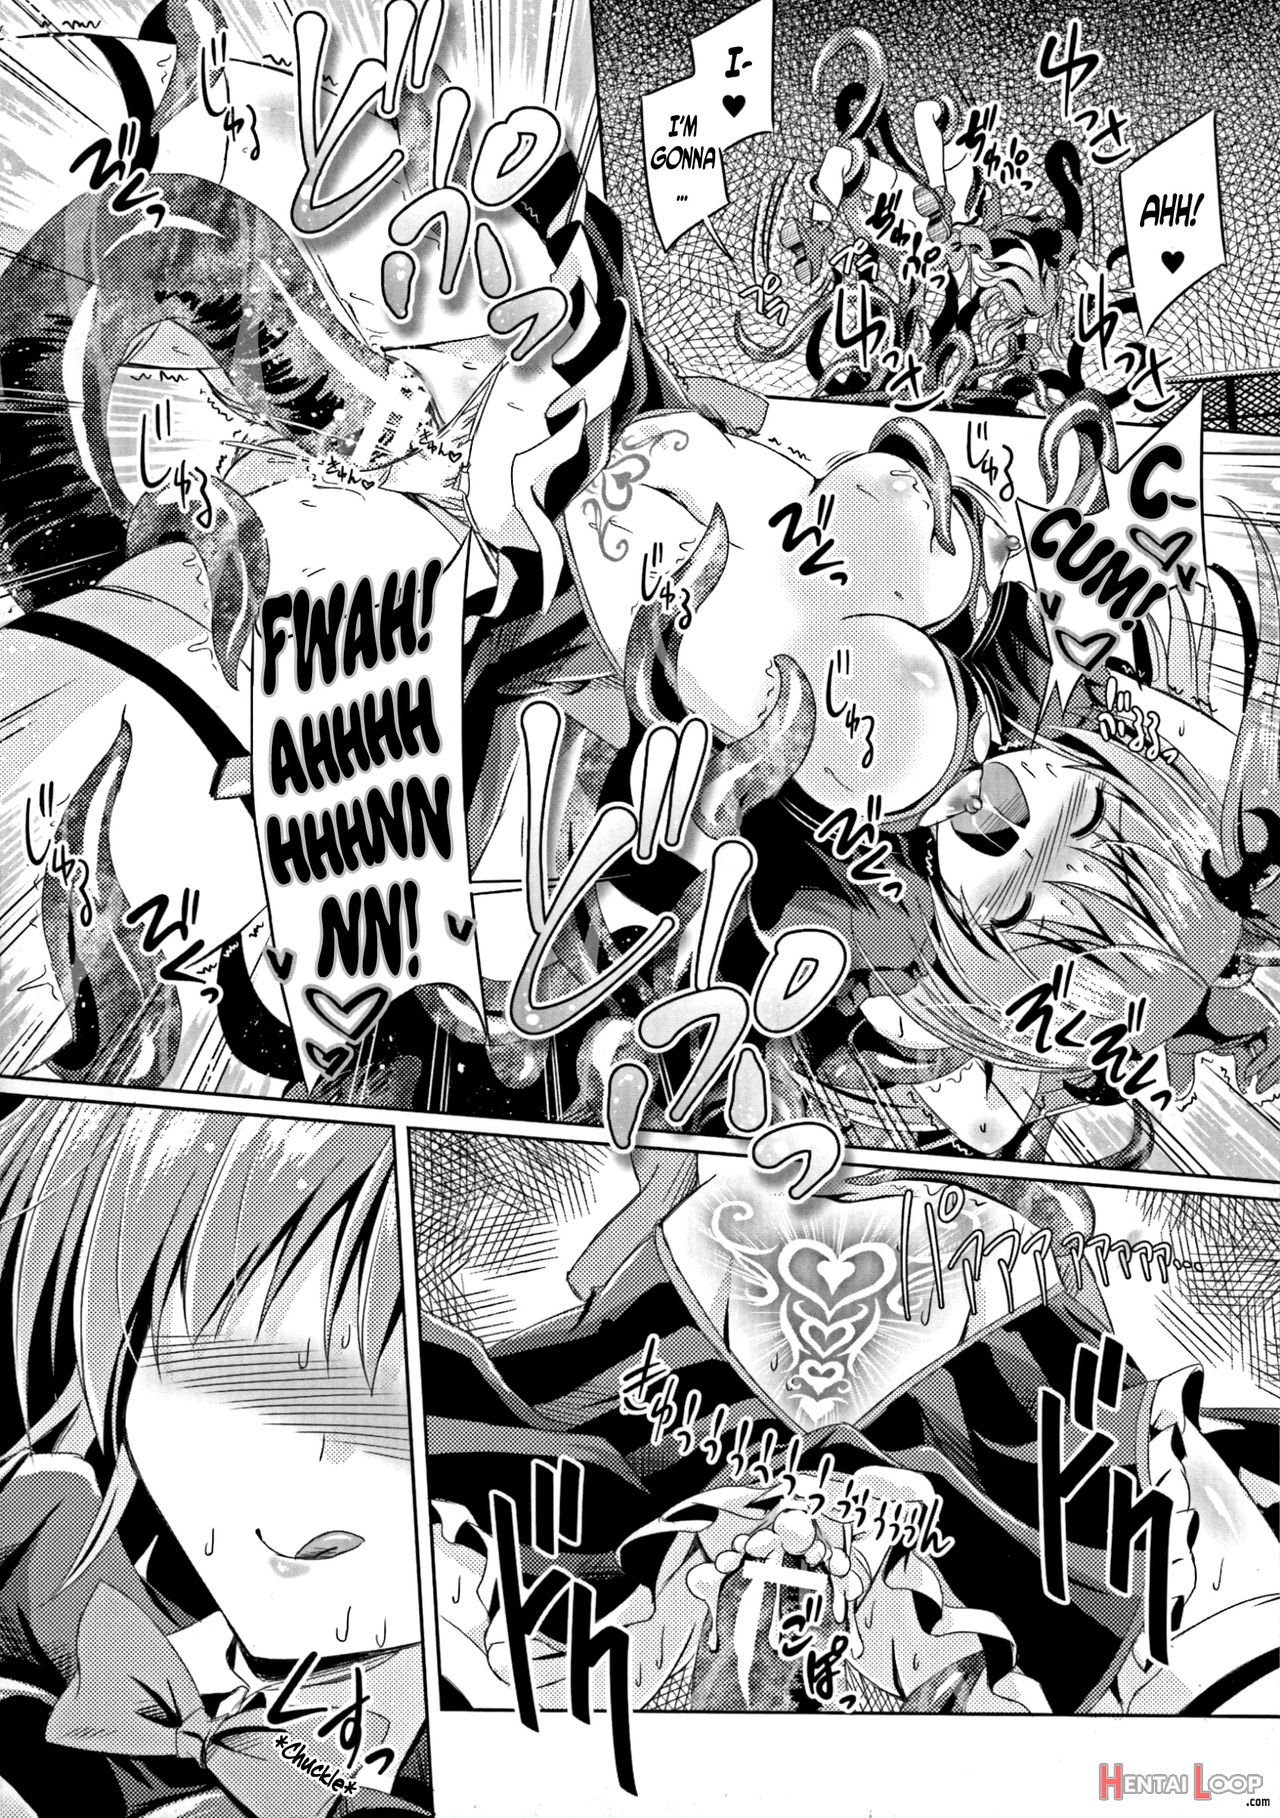 Kyuuma Tenshi Succubus Kiss Episode 1 page 6